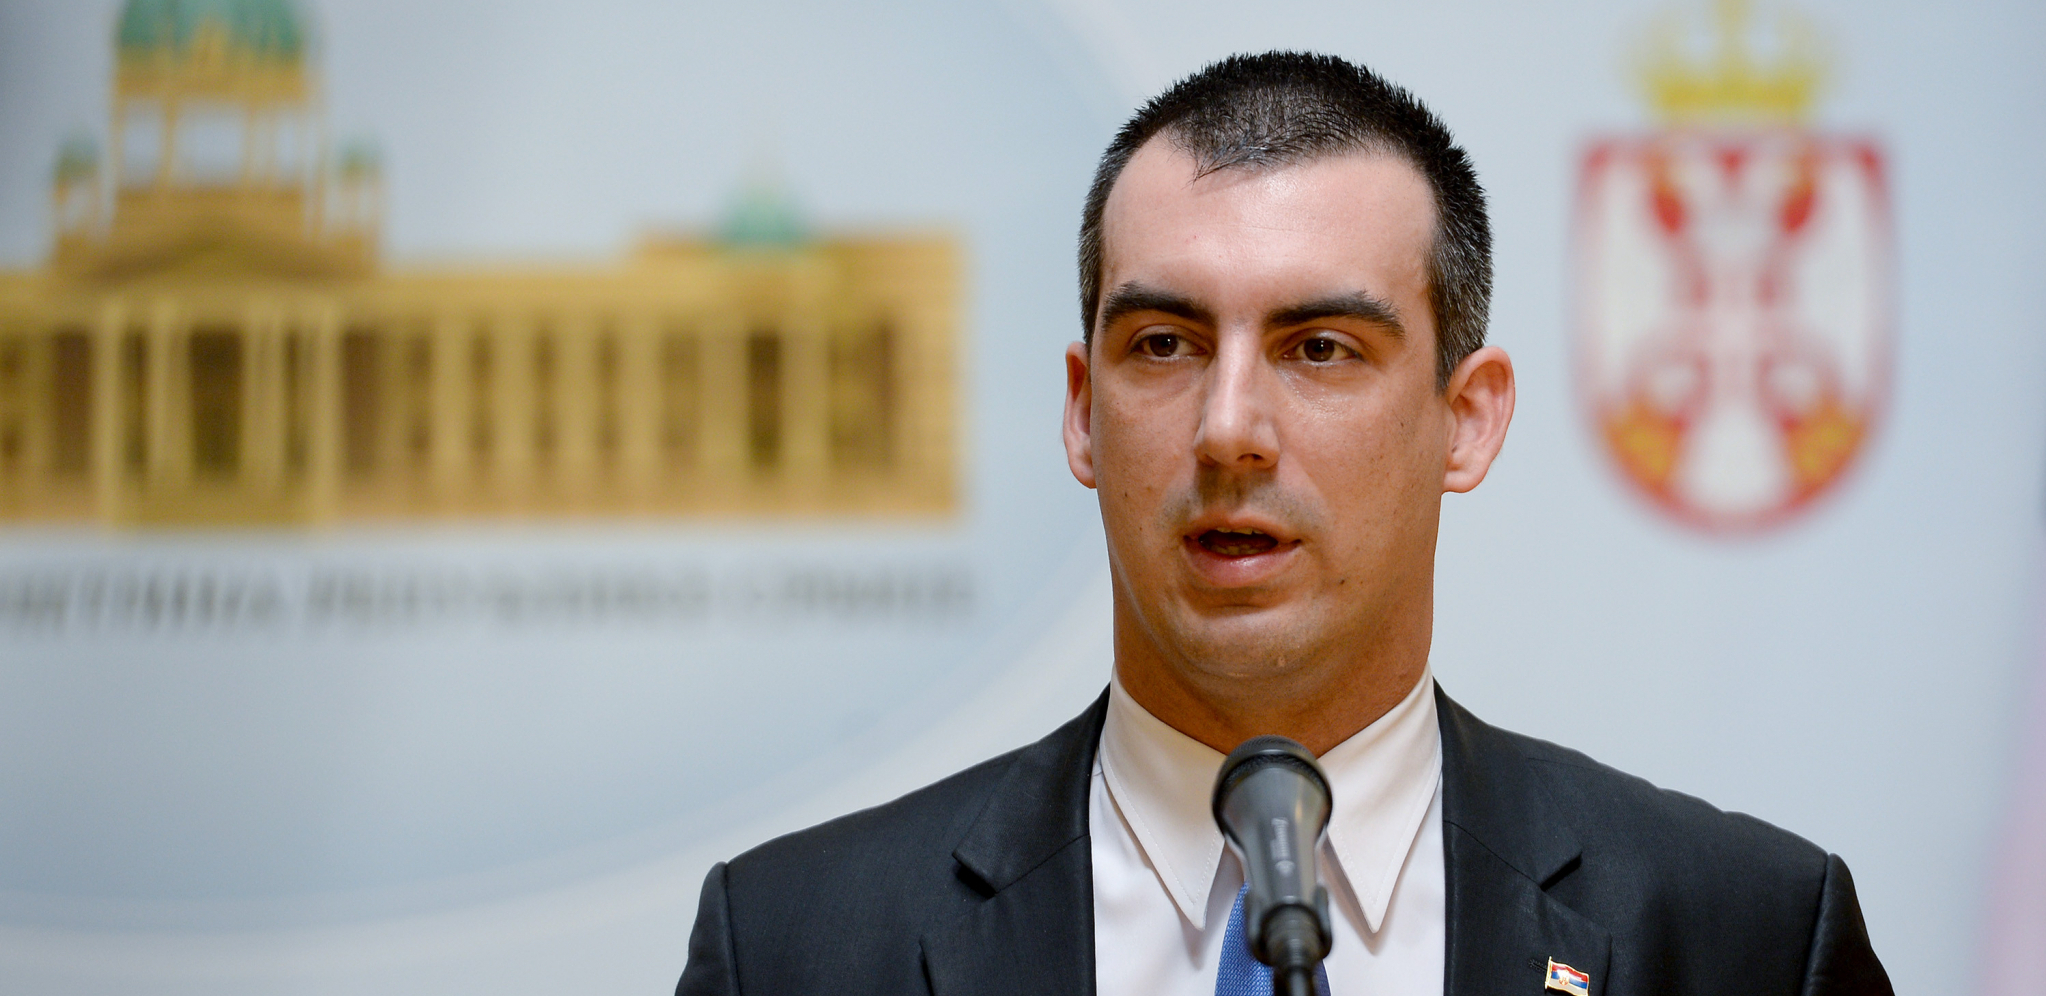 Đilasovci otvoreno prete smrću srpskom političaru: Bićeš obešen! (FOTO)